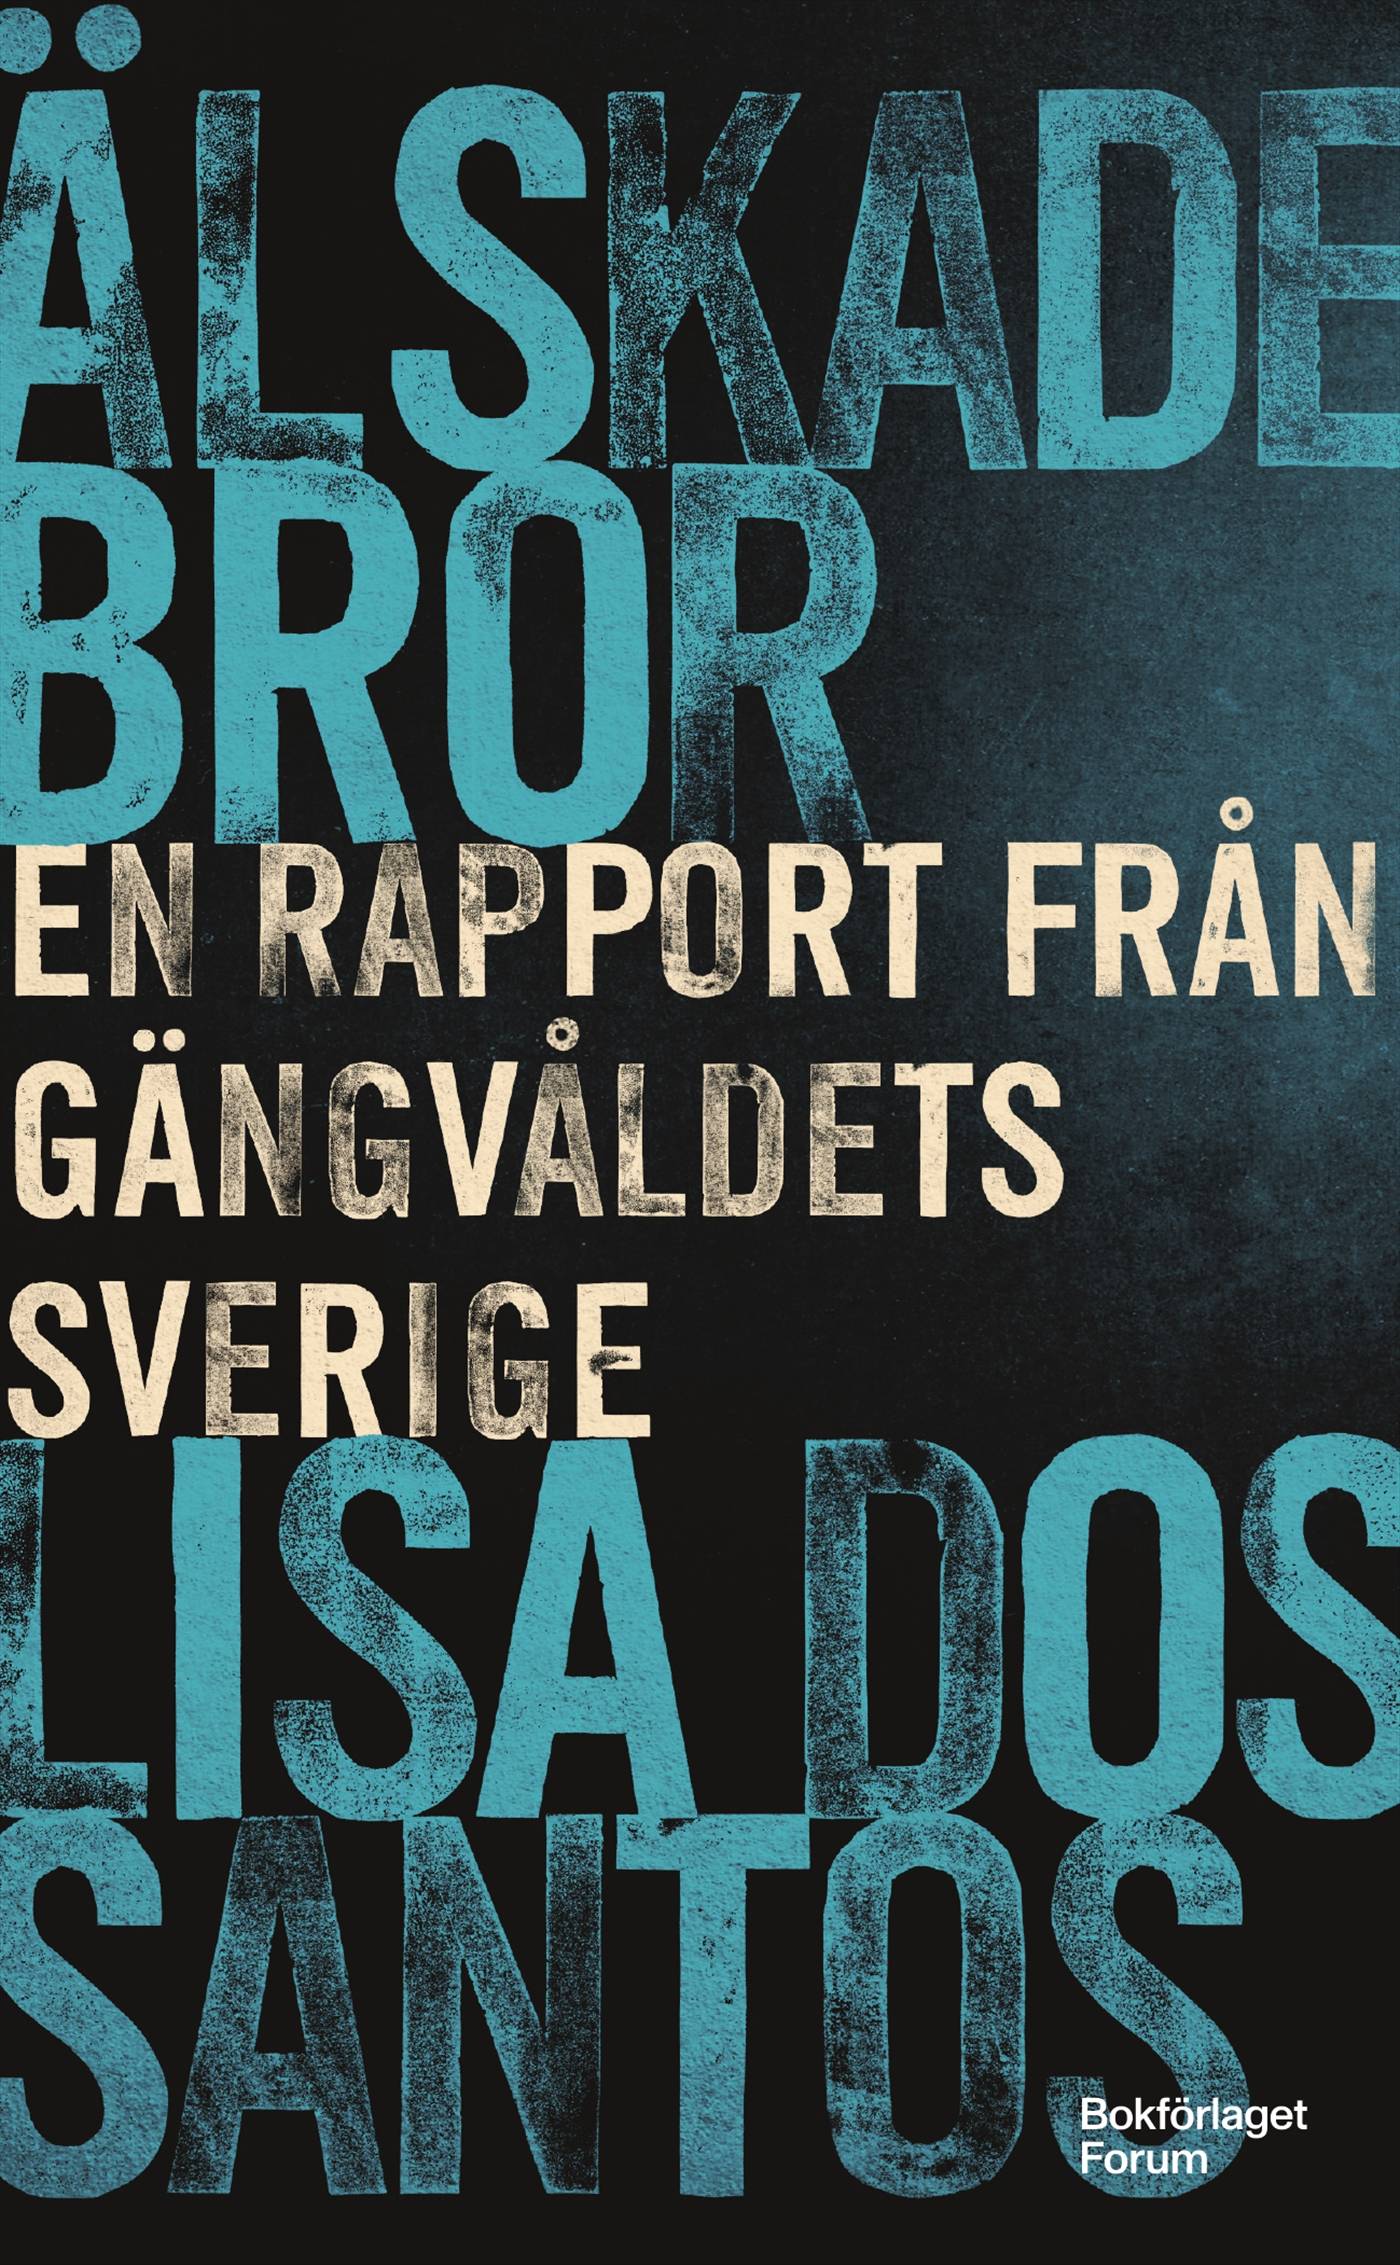 Älskade bror : en rapport från gängvåldets Sverige